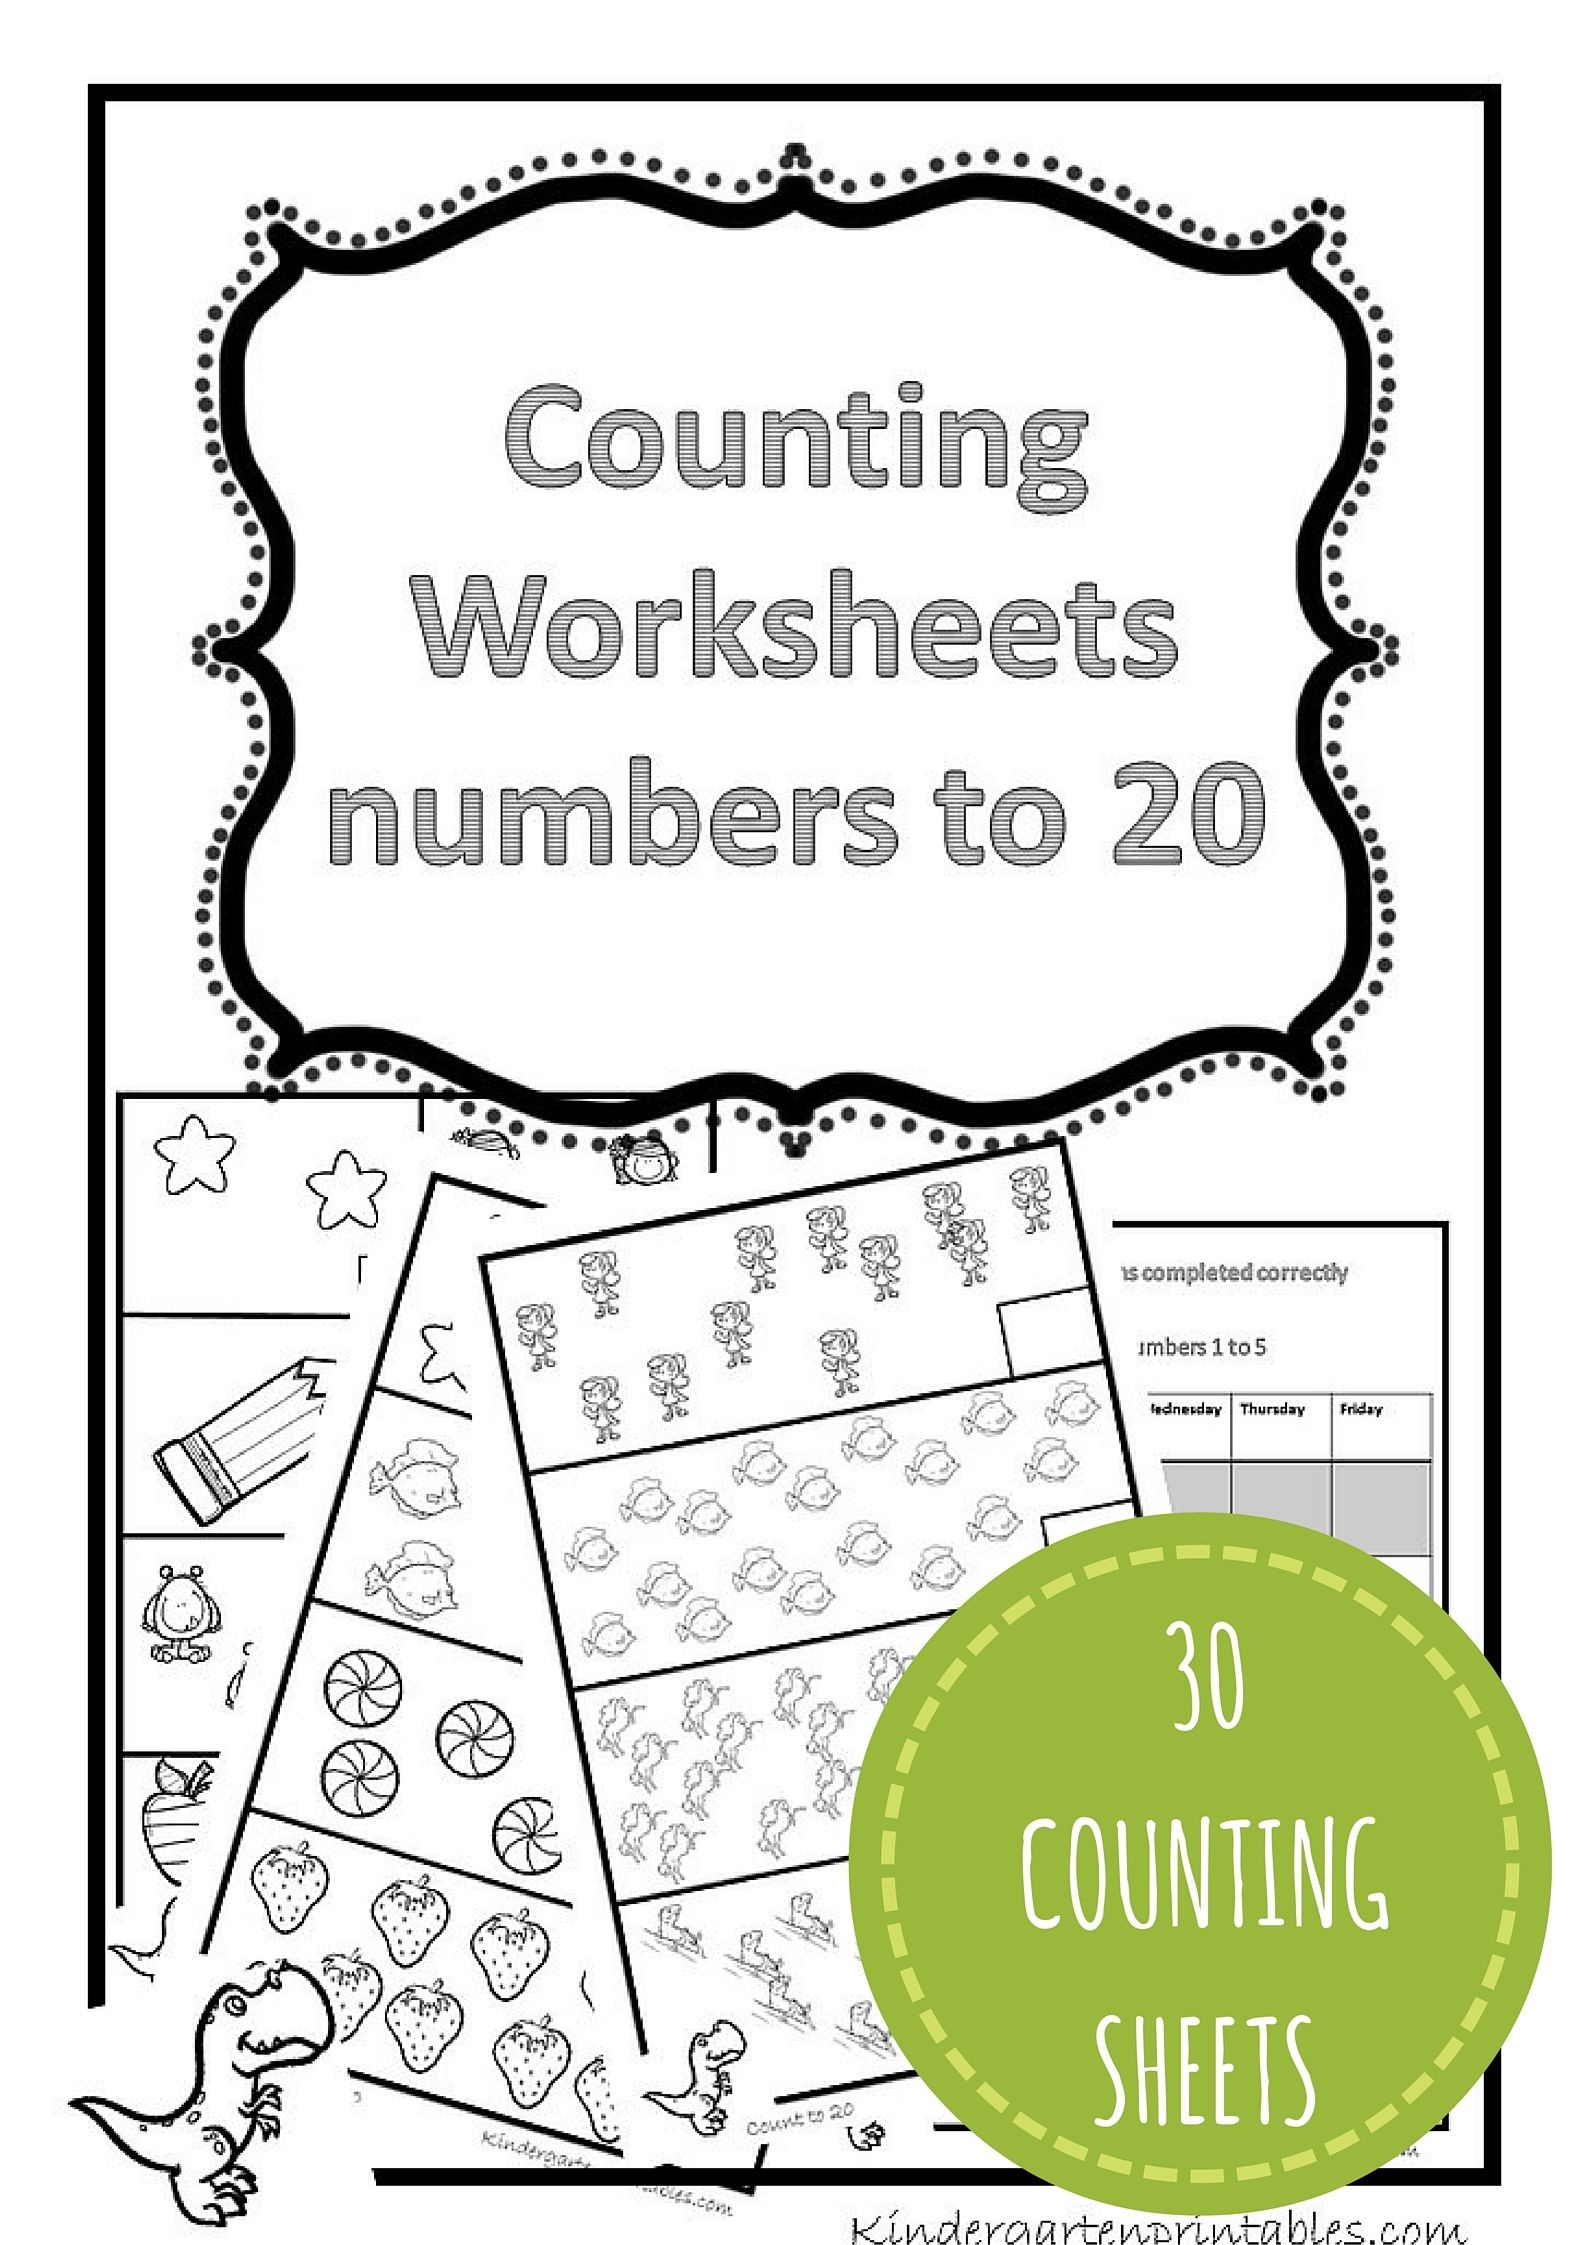 Counting Worksheets 1-20 Free Printable Workbook Counting Worksheets - Free Printable Math Workbooks